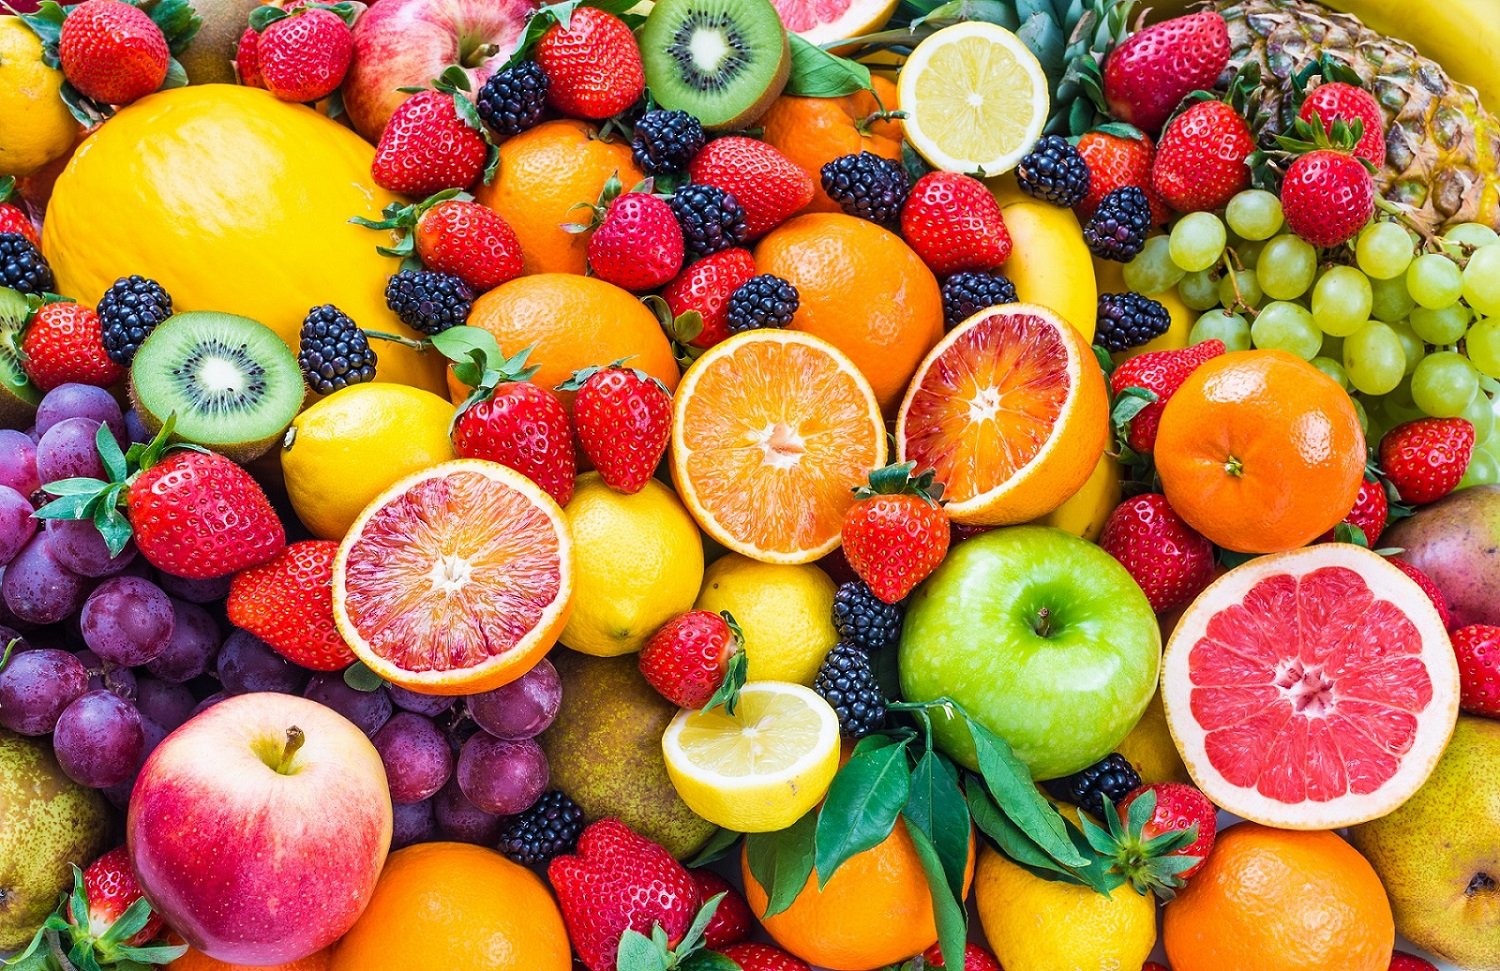 Ngoài cung cấp vitamin, chất khoáng và bổ sung nước cho cơ thể, trái cây tươi còn giúp cải thiện sức khỏe lên rất nhiều